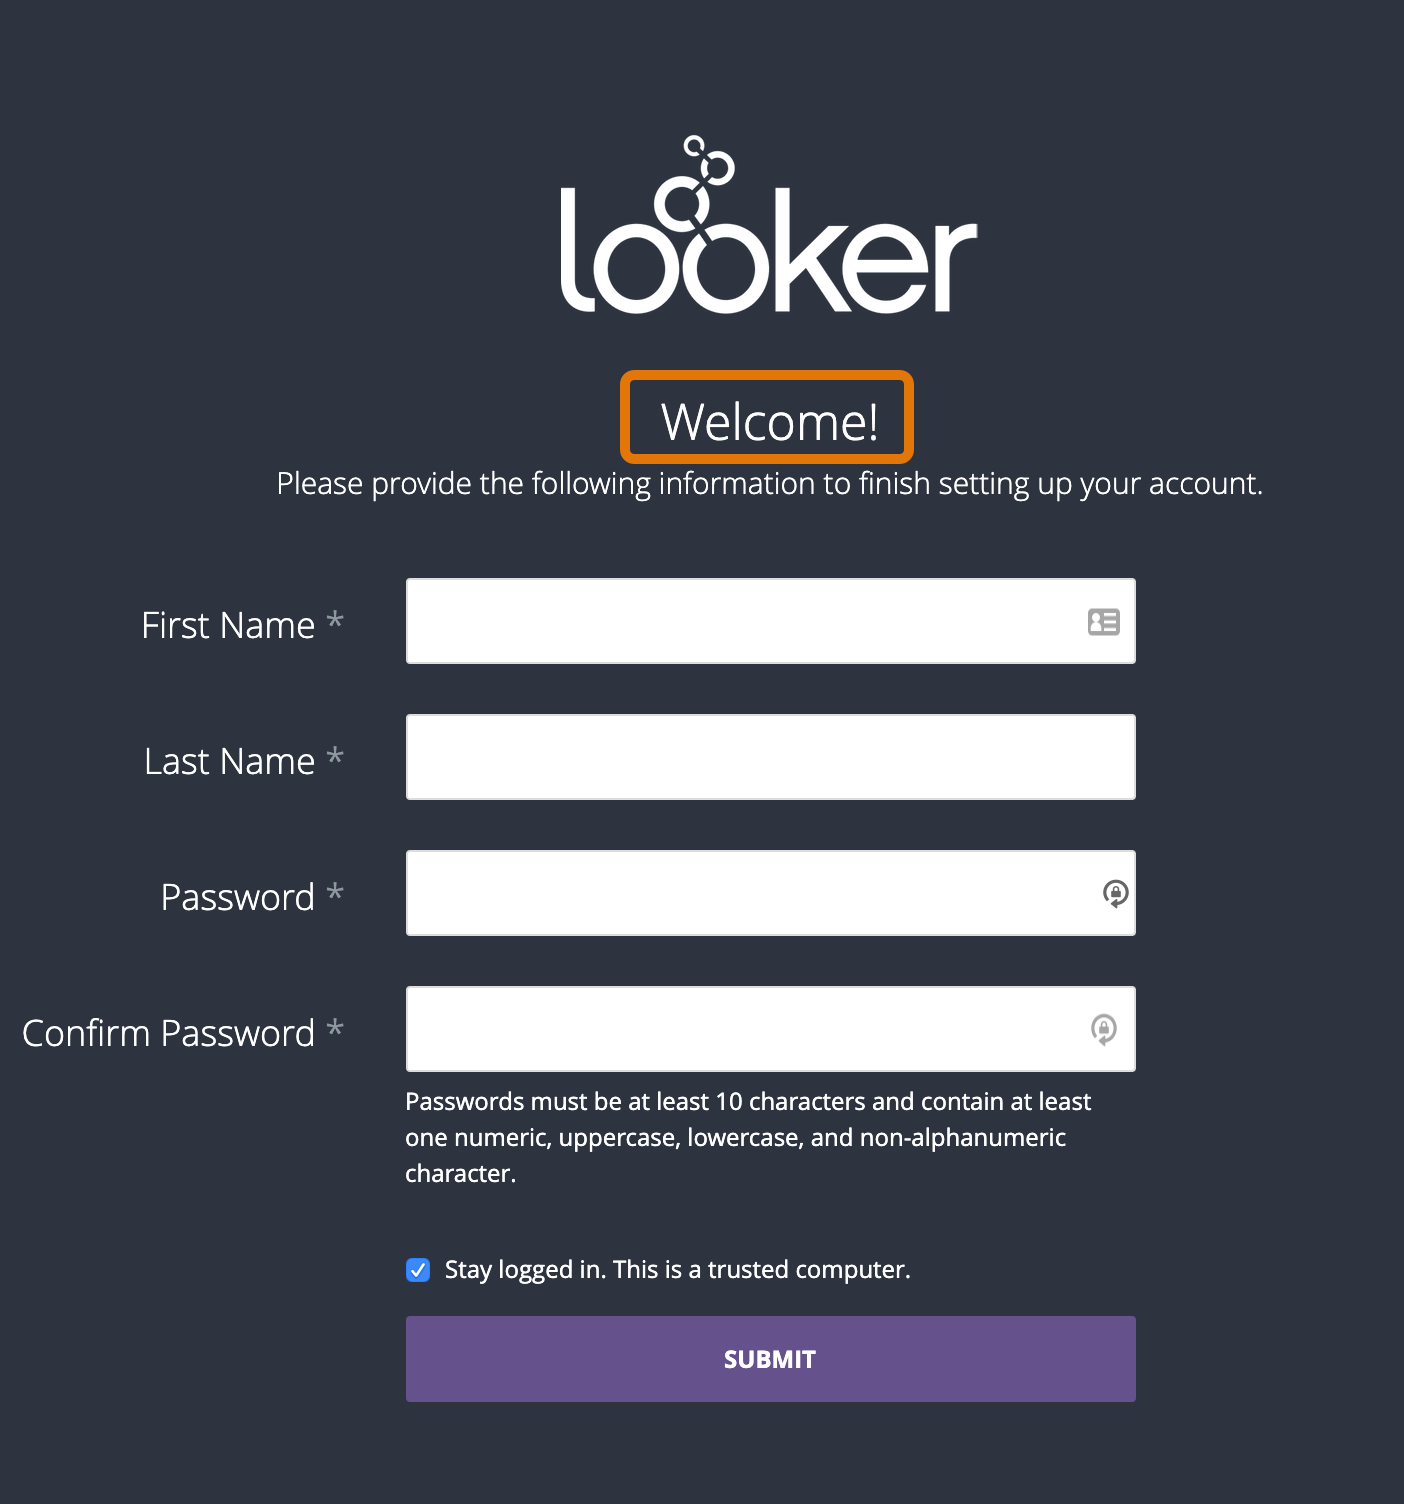 Looker 帐号设置页面的屏幕截图。页面顶部有一个 Looker 徽标，后面紧跟着“Welcome!”字样。